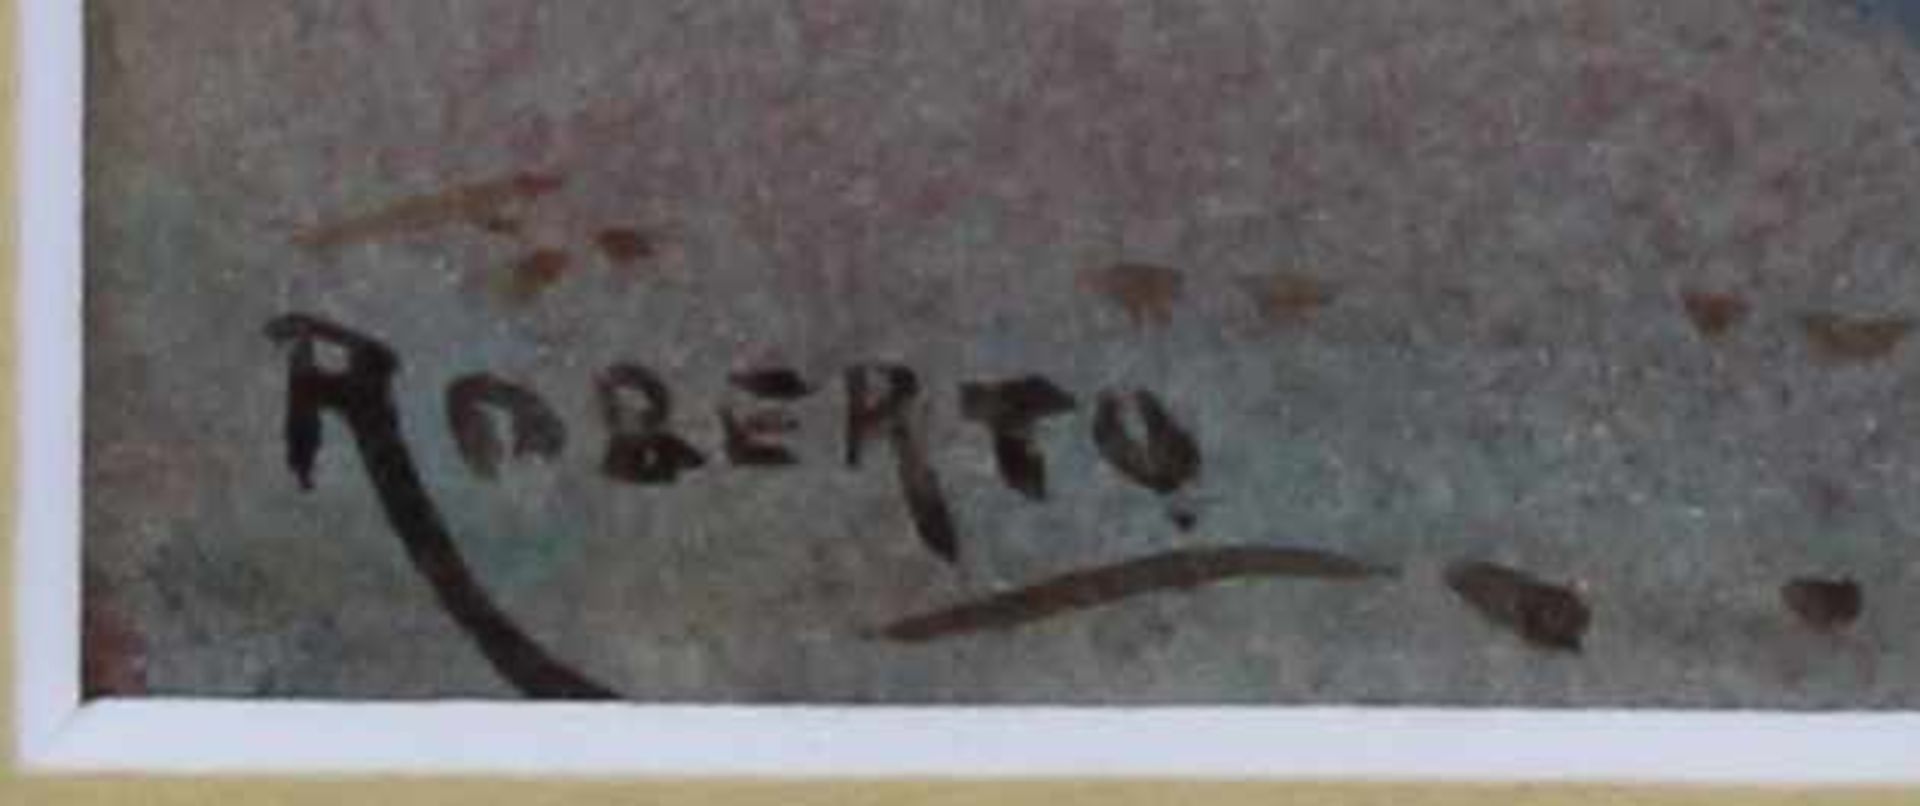 Roberto (19./20. Jh.), "Südländische Altstadtgasse", Aquarell, signiert unten links Roberto, 26 x 12 - Image 3 of 3